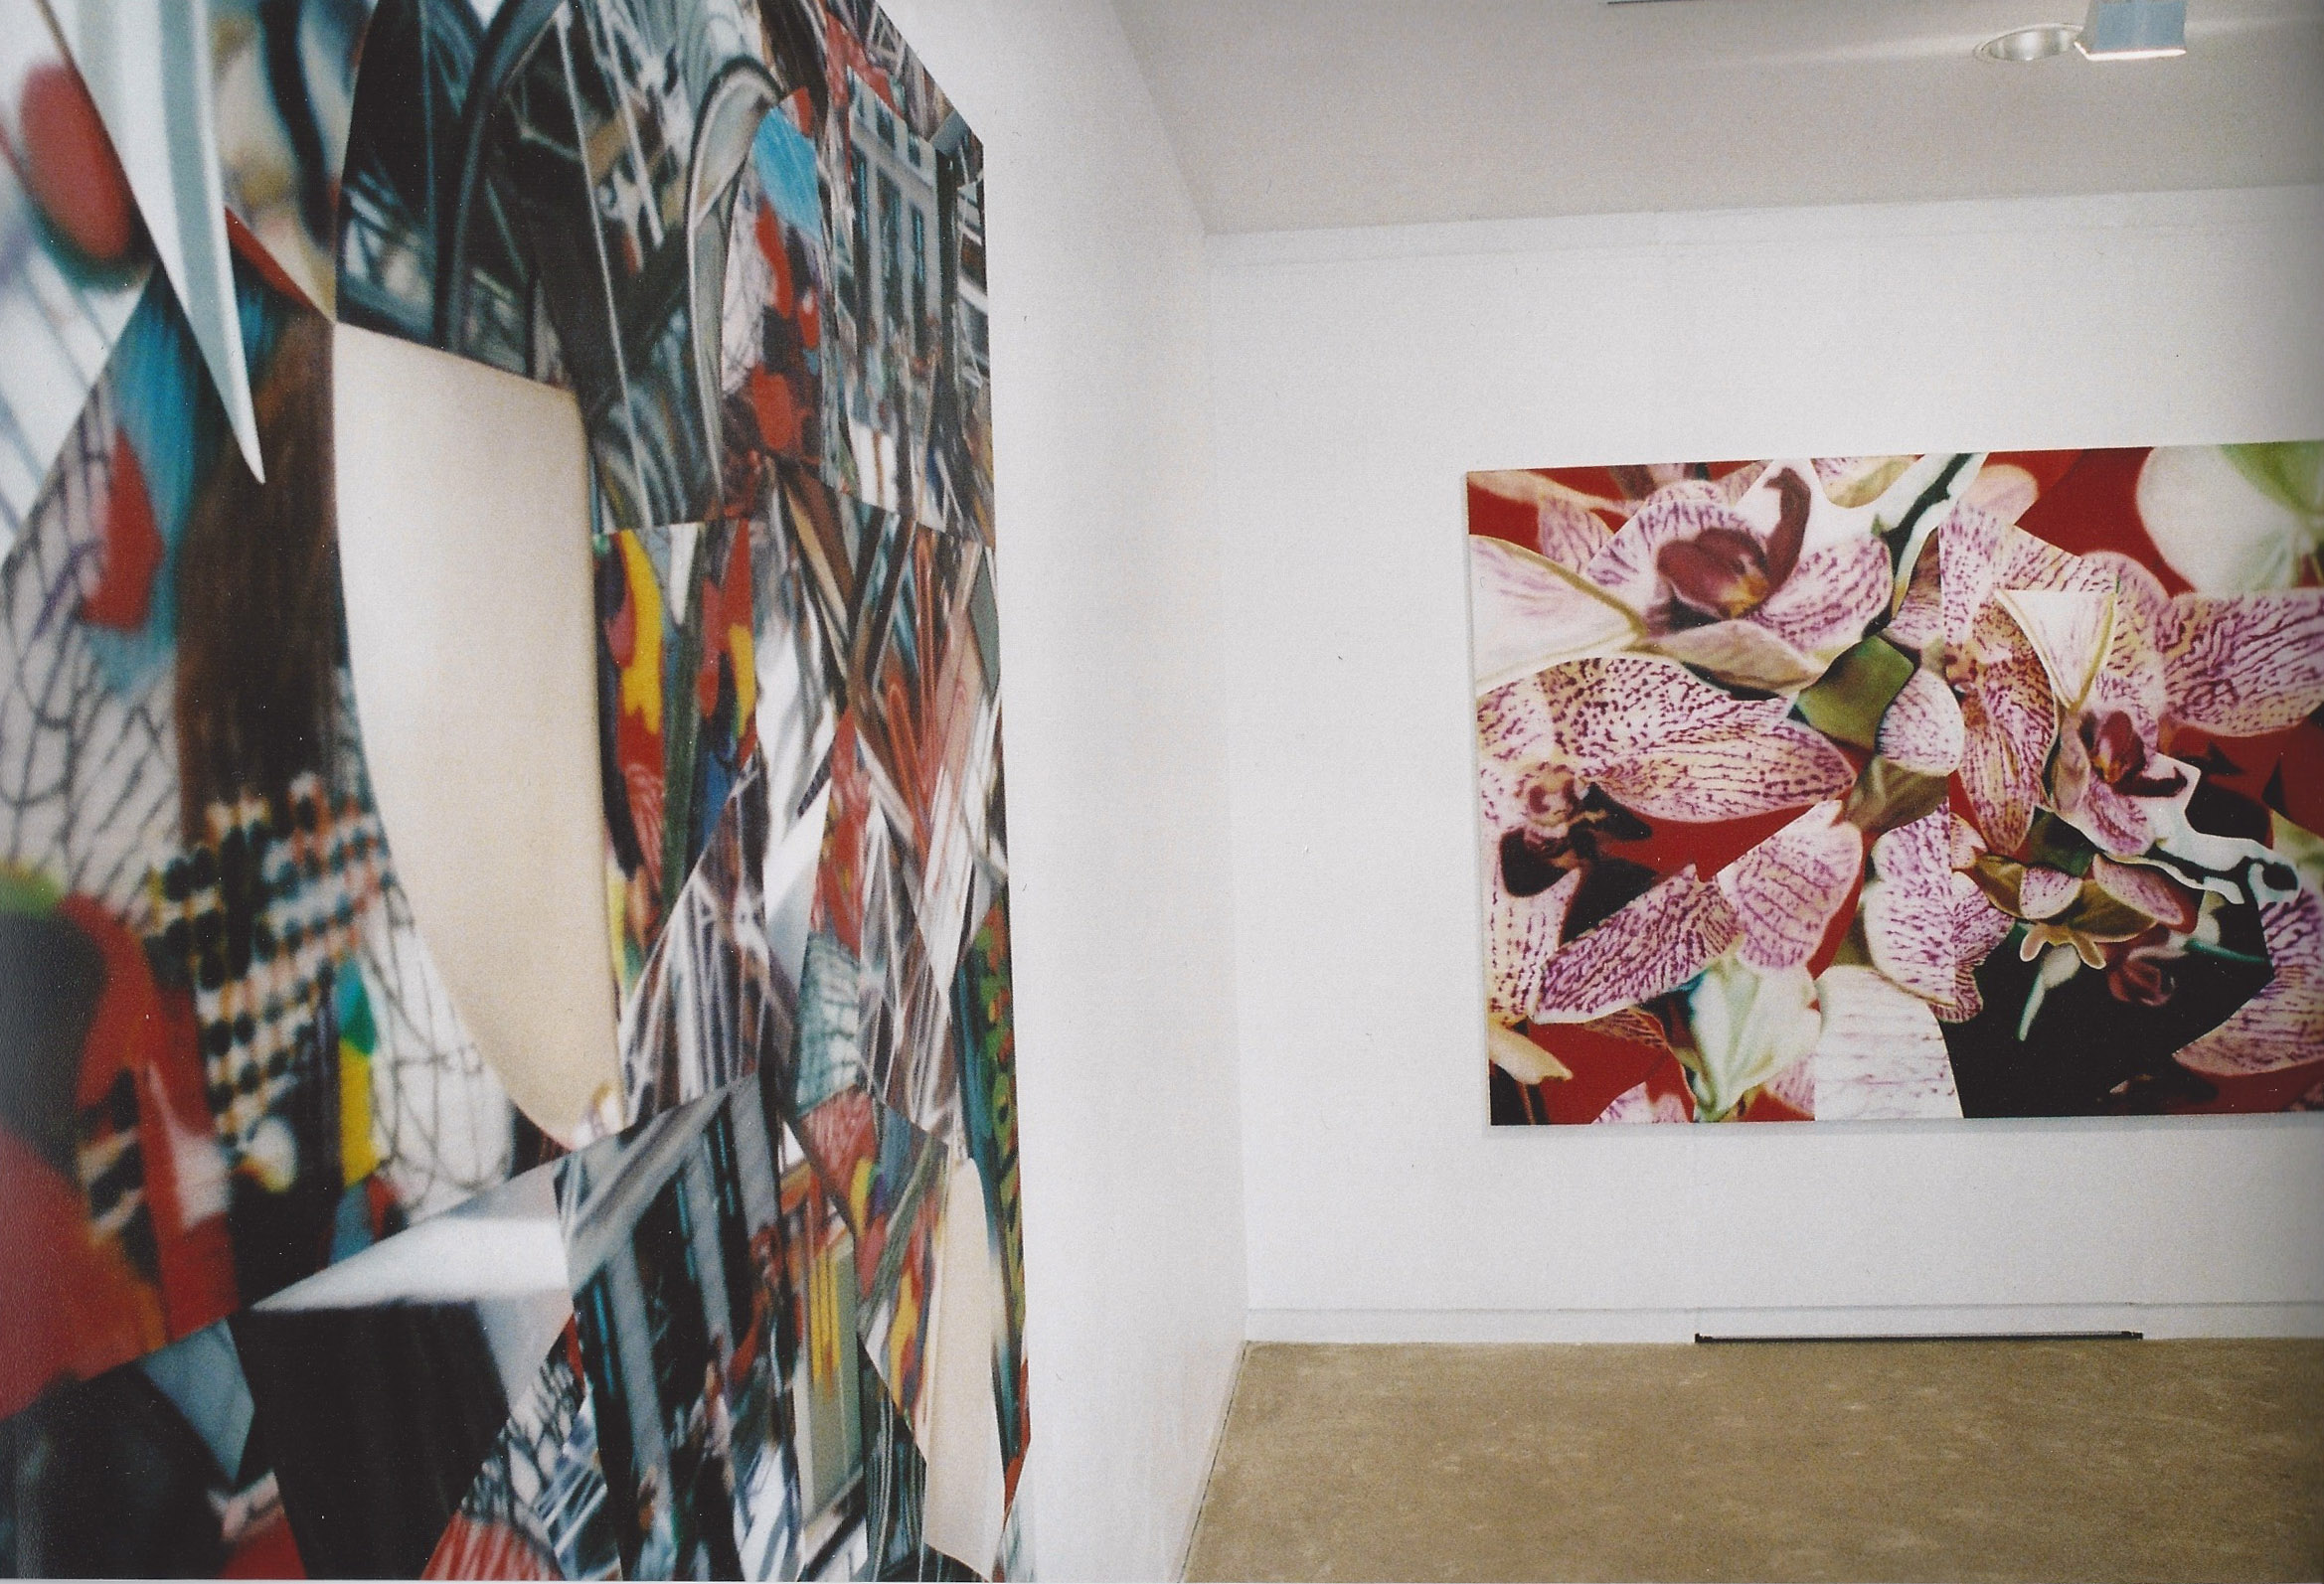   Etats de Peinture , Maison des Arts de Malakoff (FR)&nbsp;2003. Curator Philippe Piguet. 